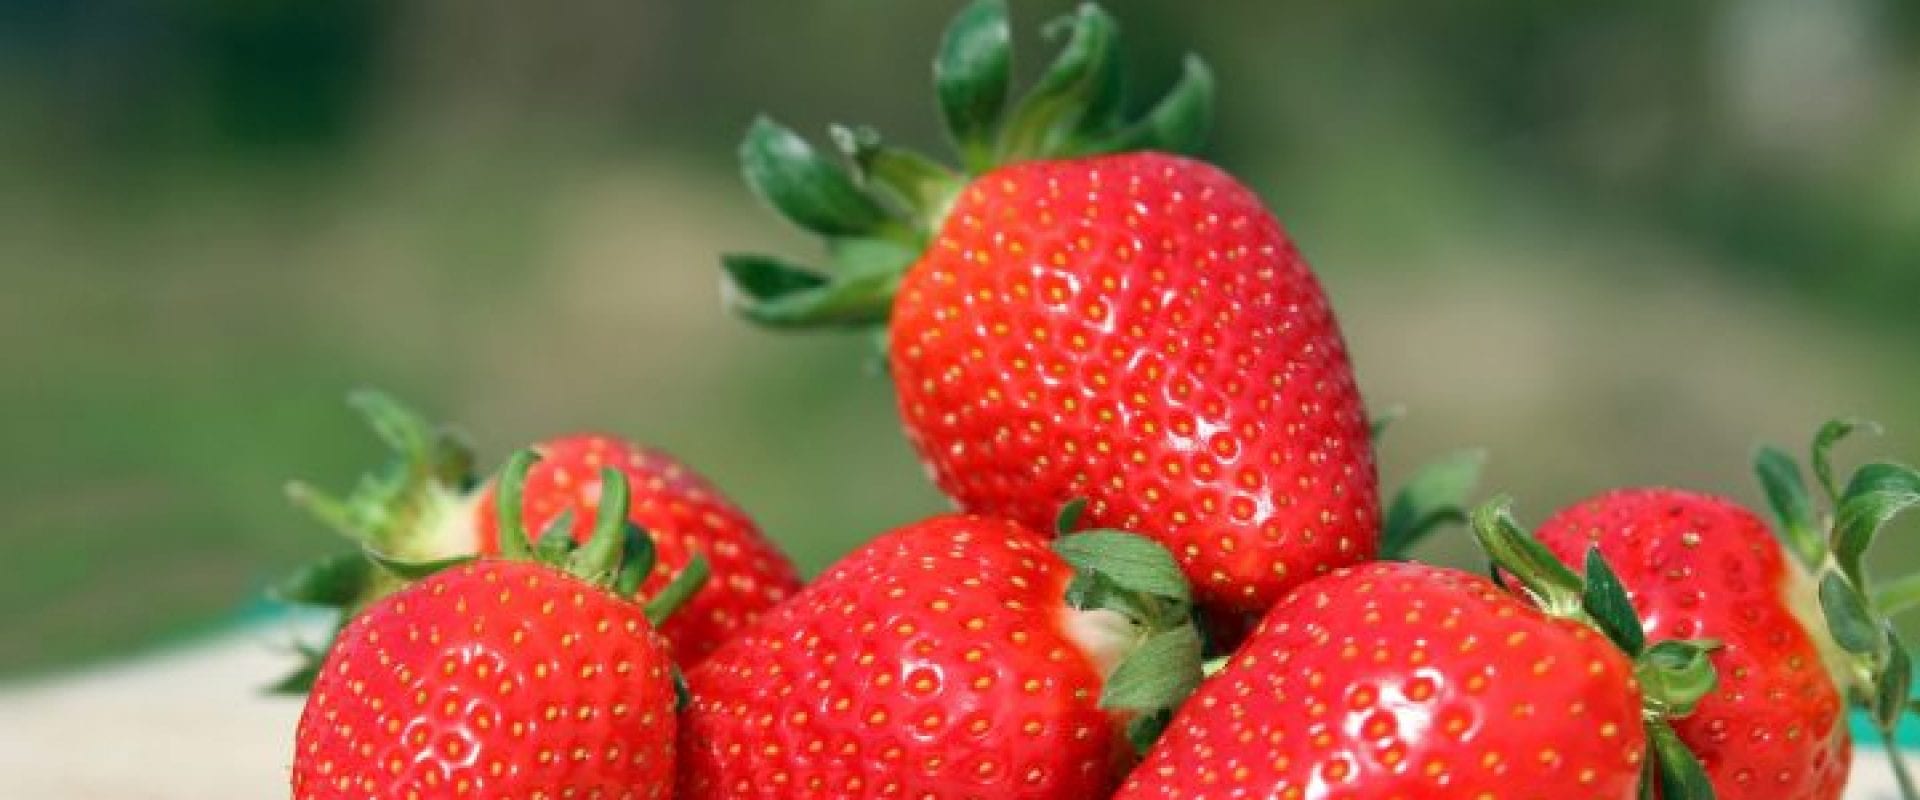 Jordbær - lavt kalorieindhold - højt C-vitaminindhold